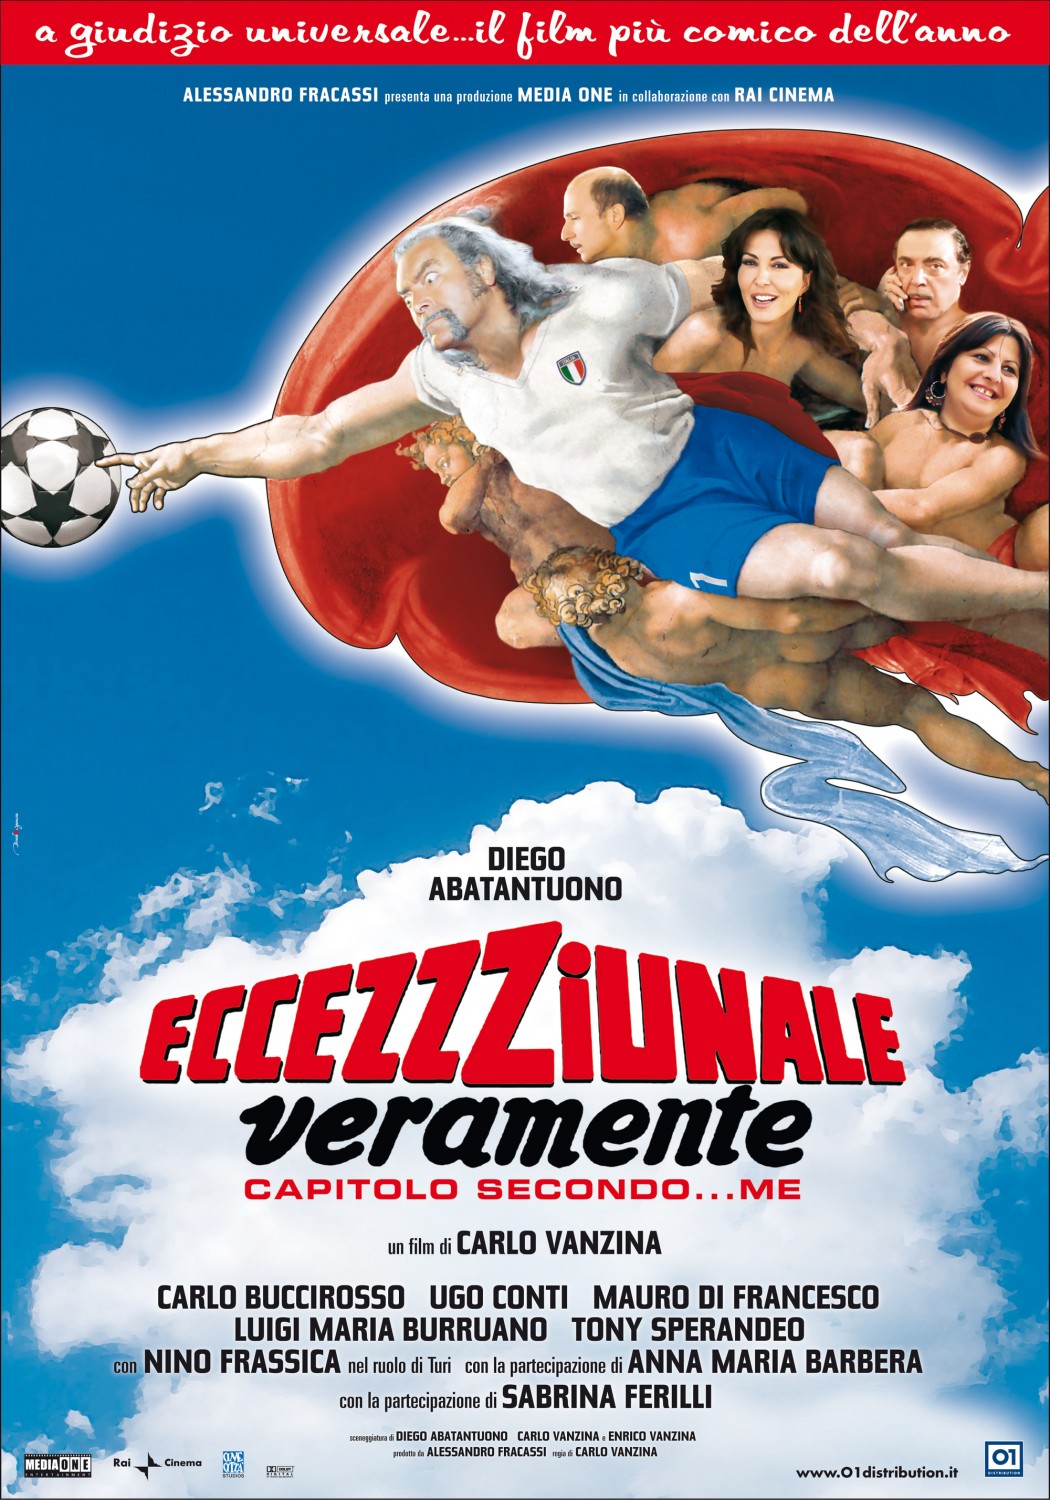 Extra Large Movie Poster Image for Eccezzziunale veramente - Capitolo secondo... me (#1 of 2)